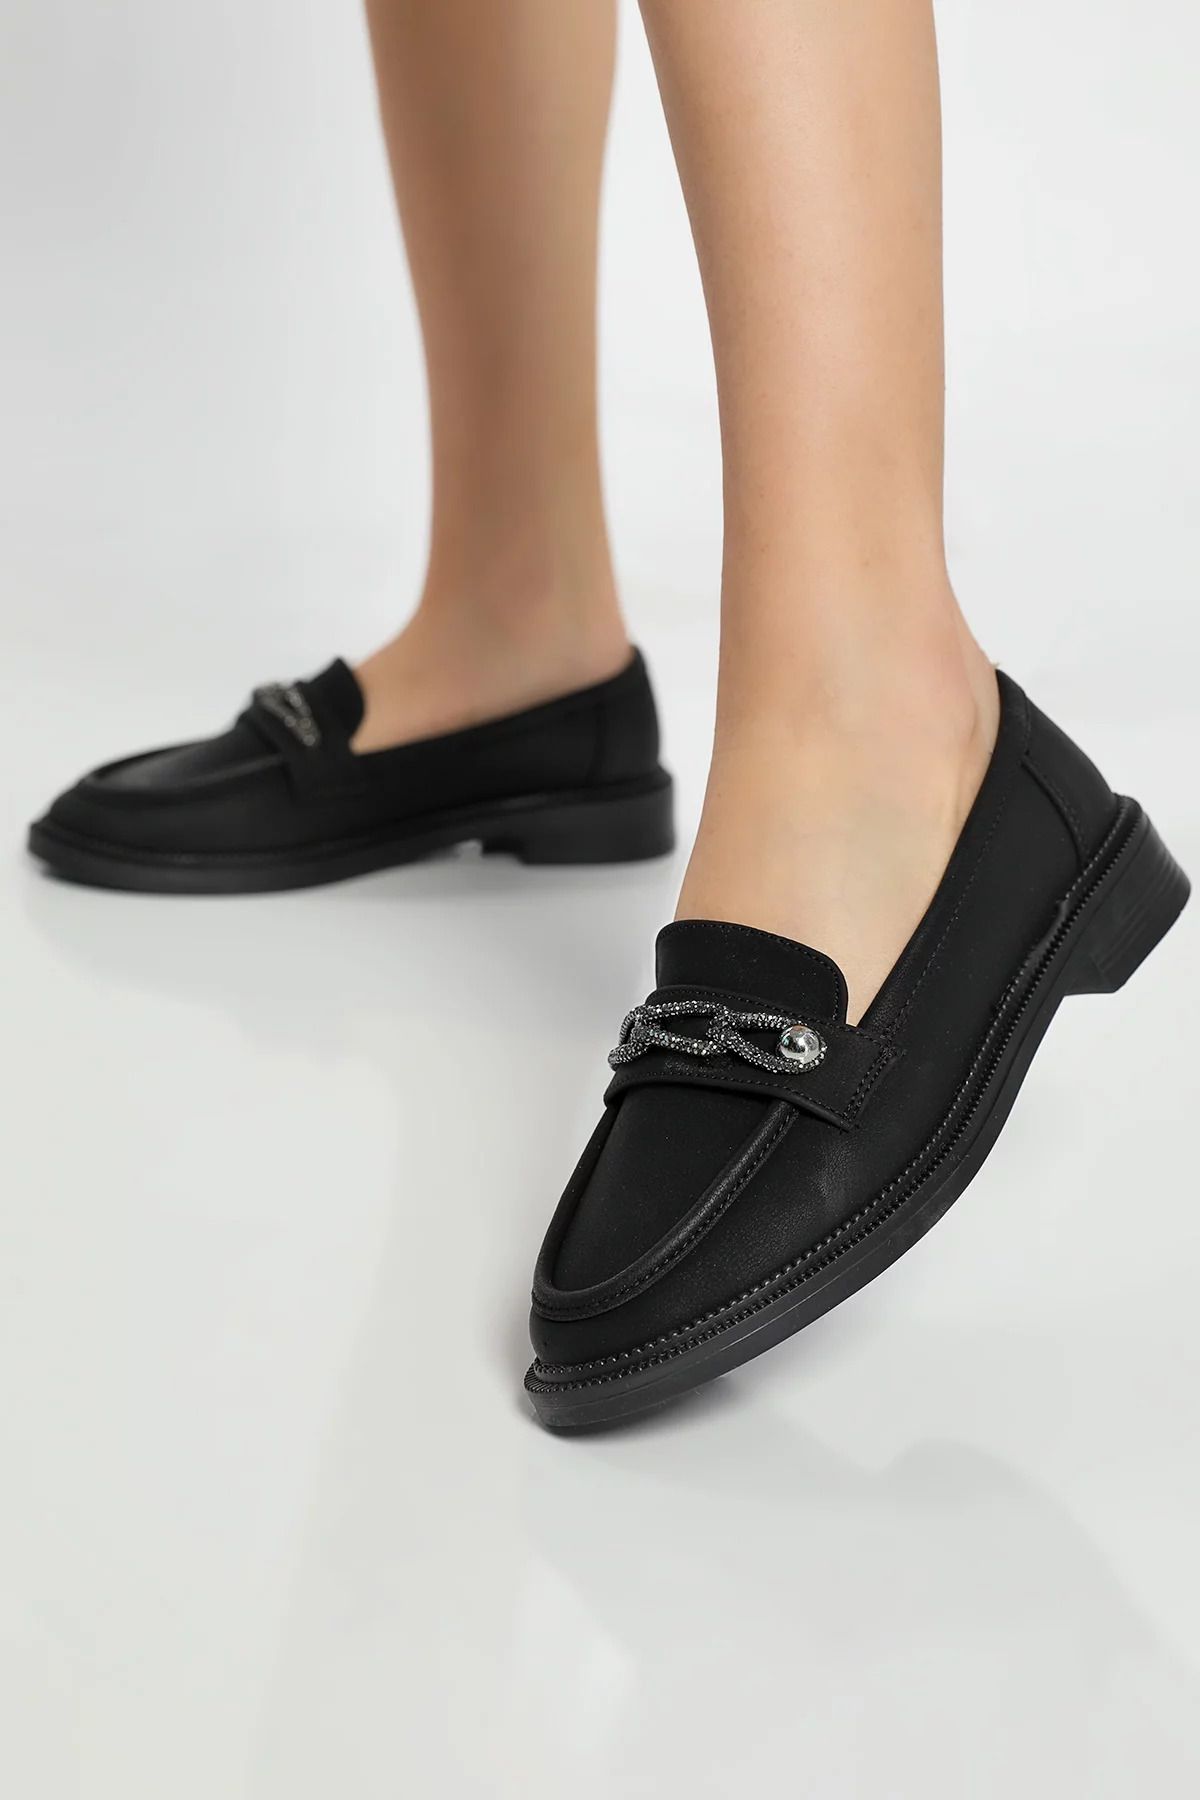 Julude Siyah Taş Detaylı Kadın Günlük Ayakkabı